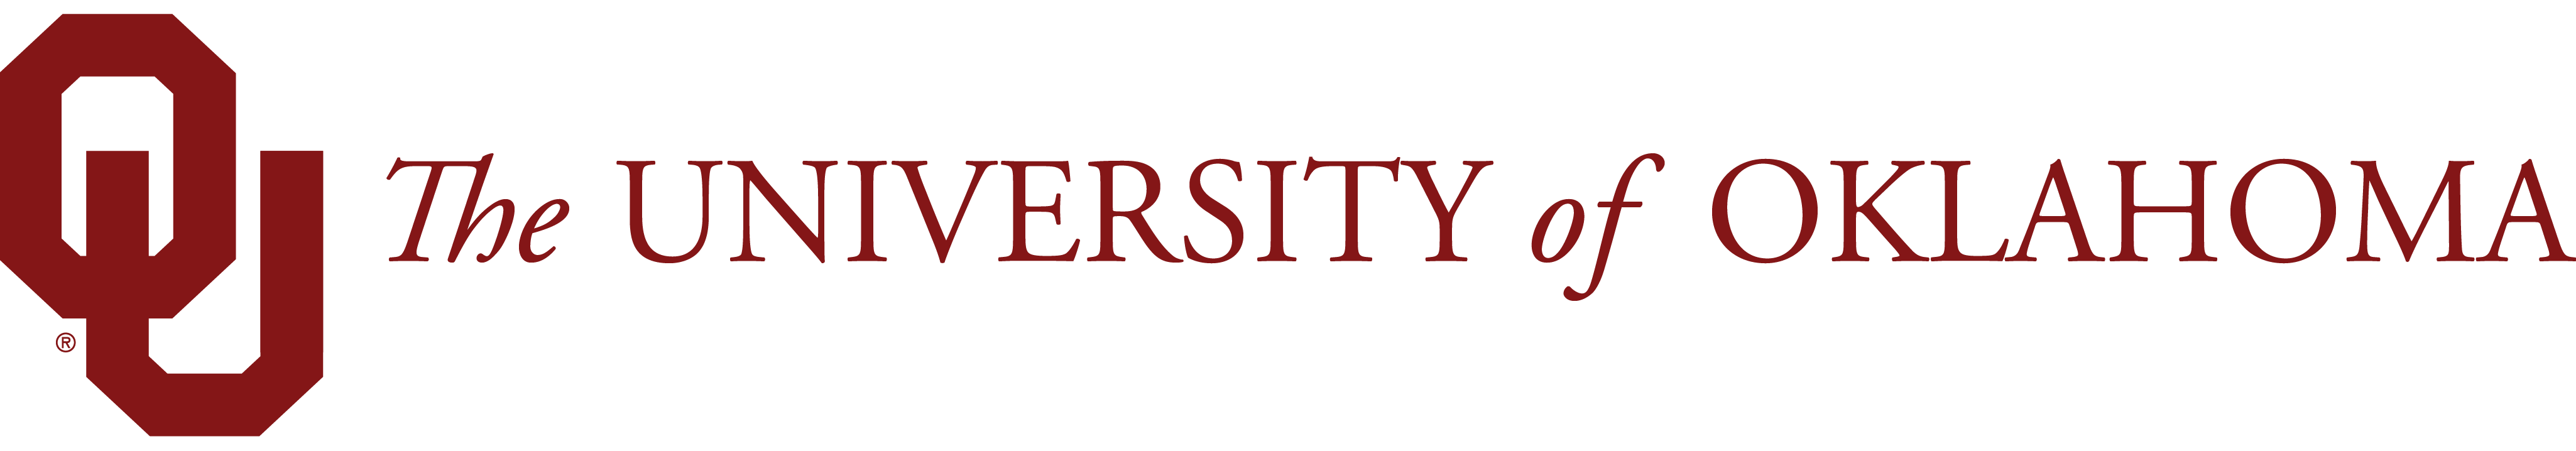 Oklahoma University Logo - Sooner Sweethearts 2019